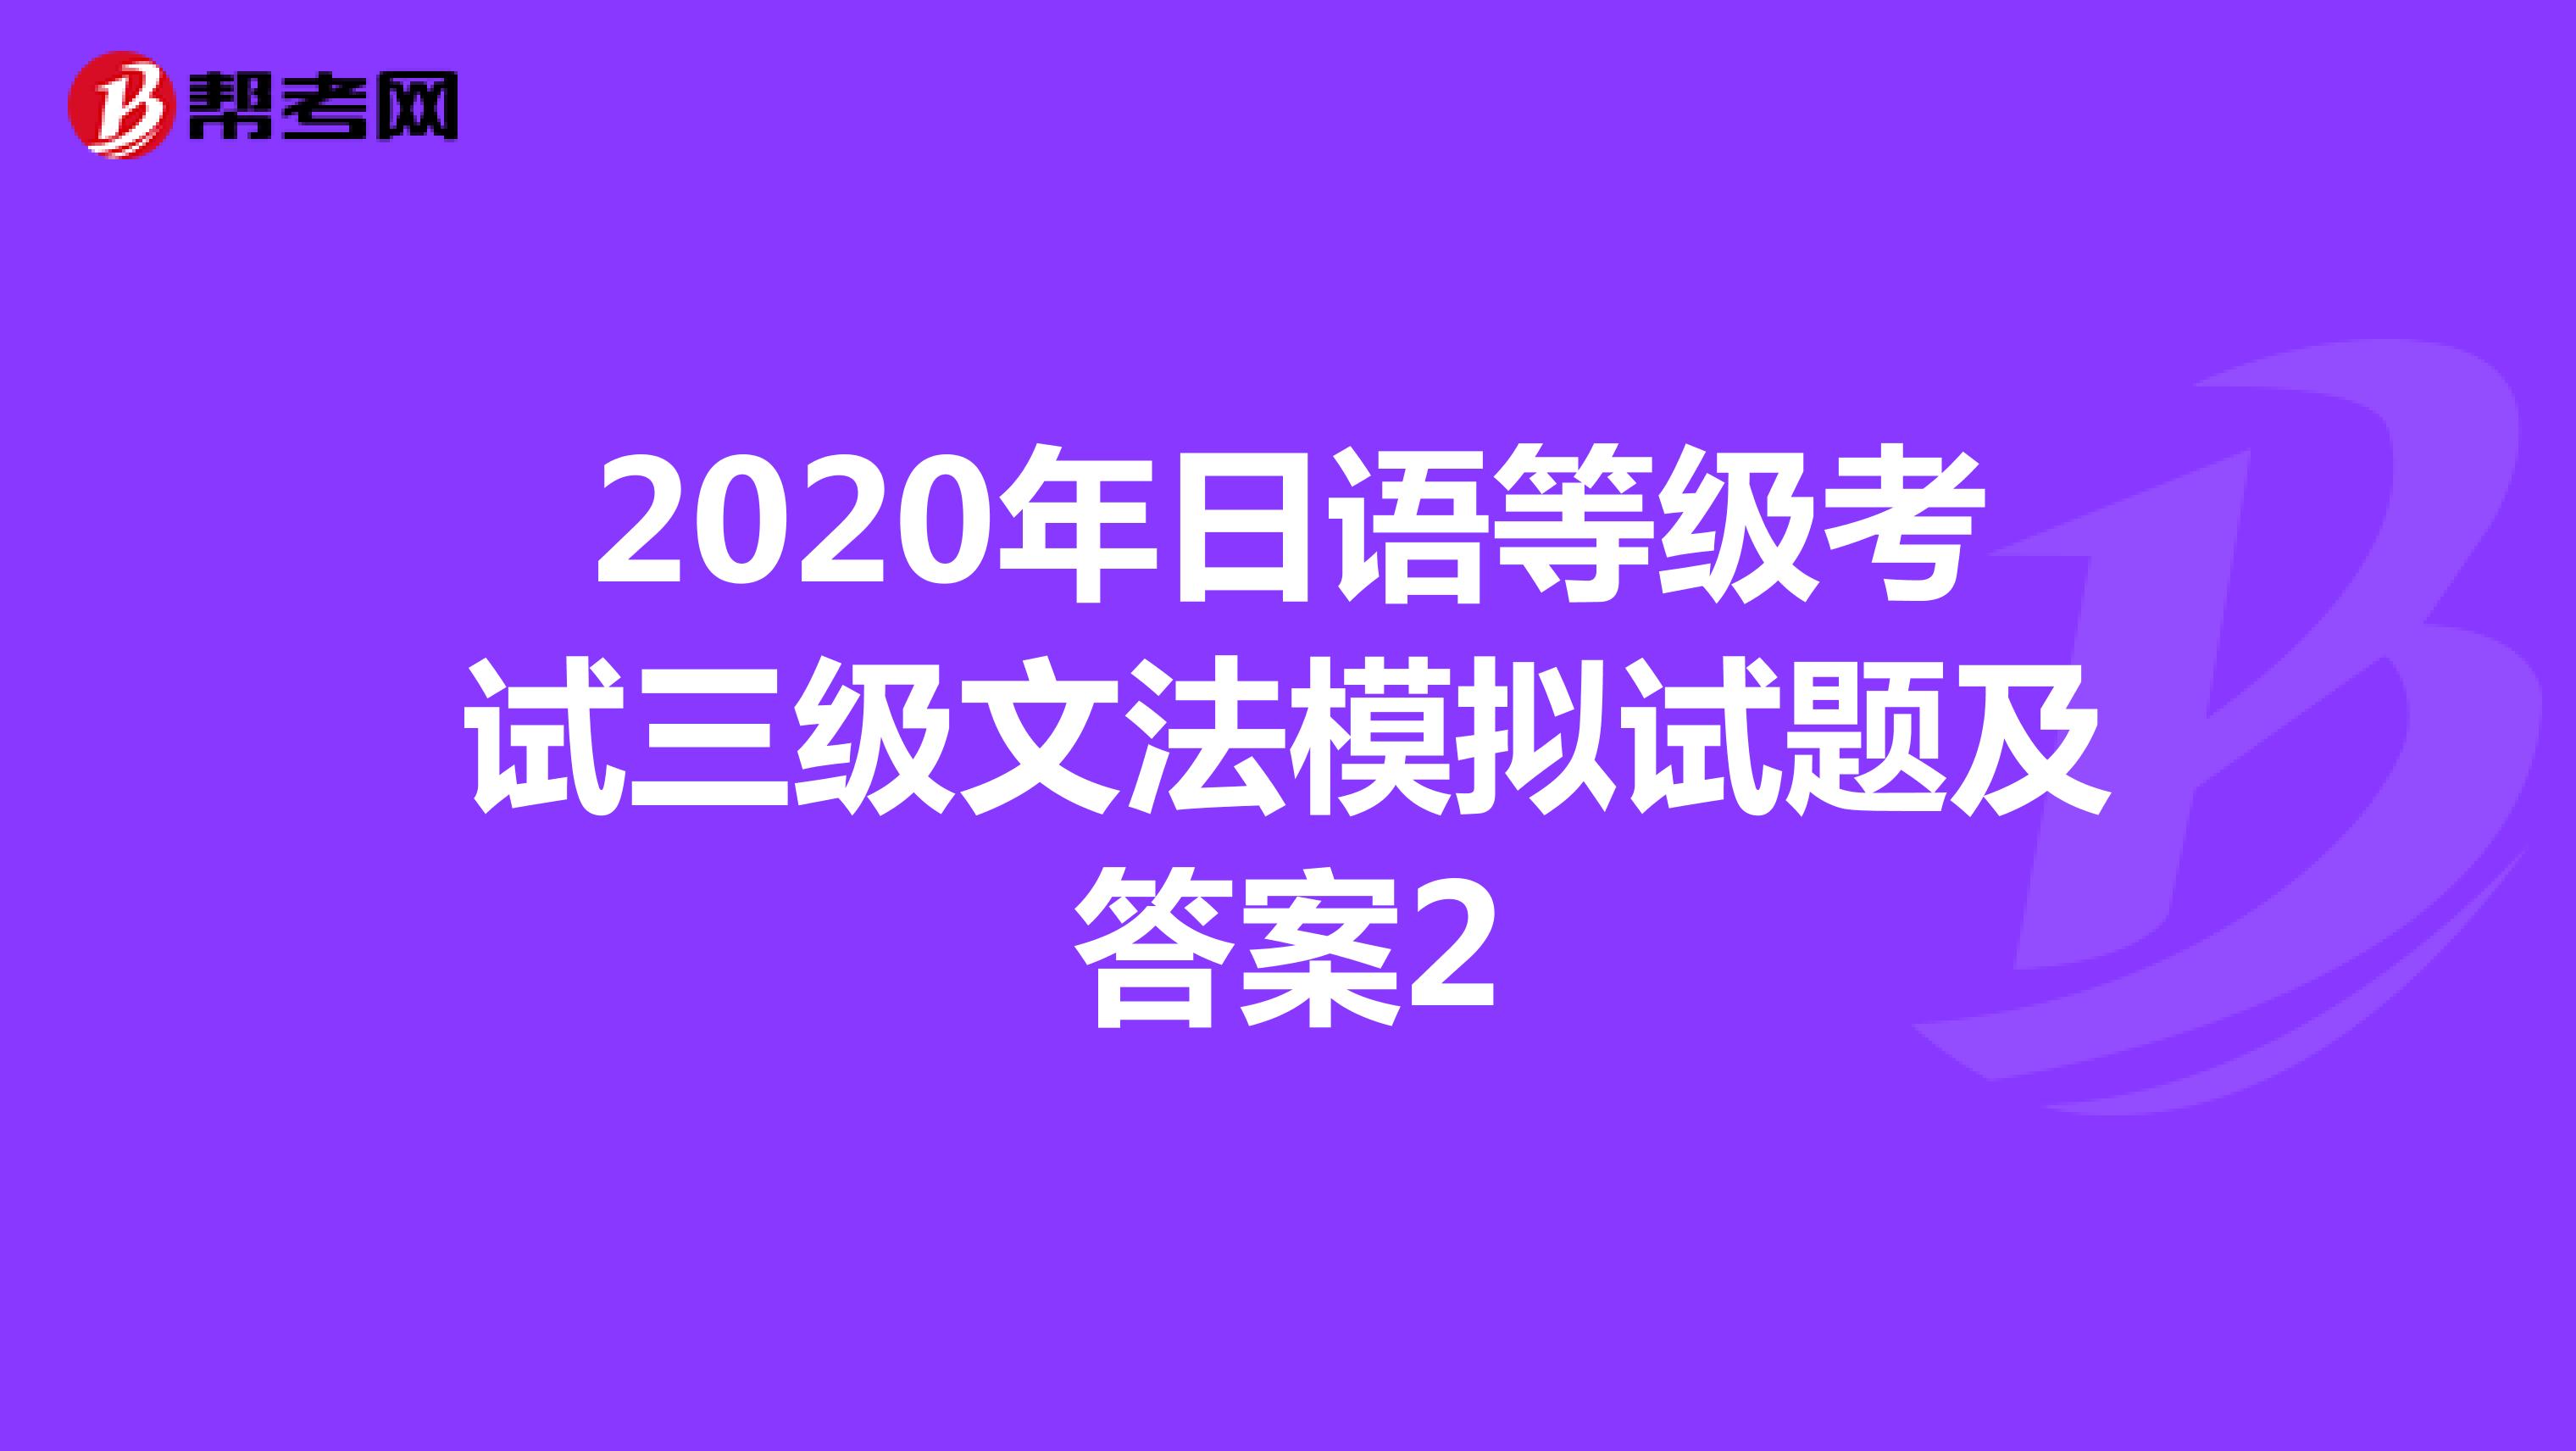 2020年日语等级考试三级文法模拟试题及答案2